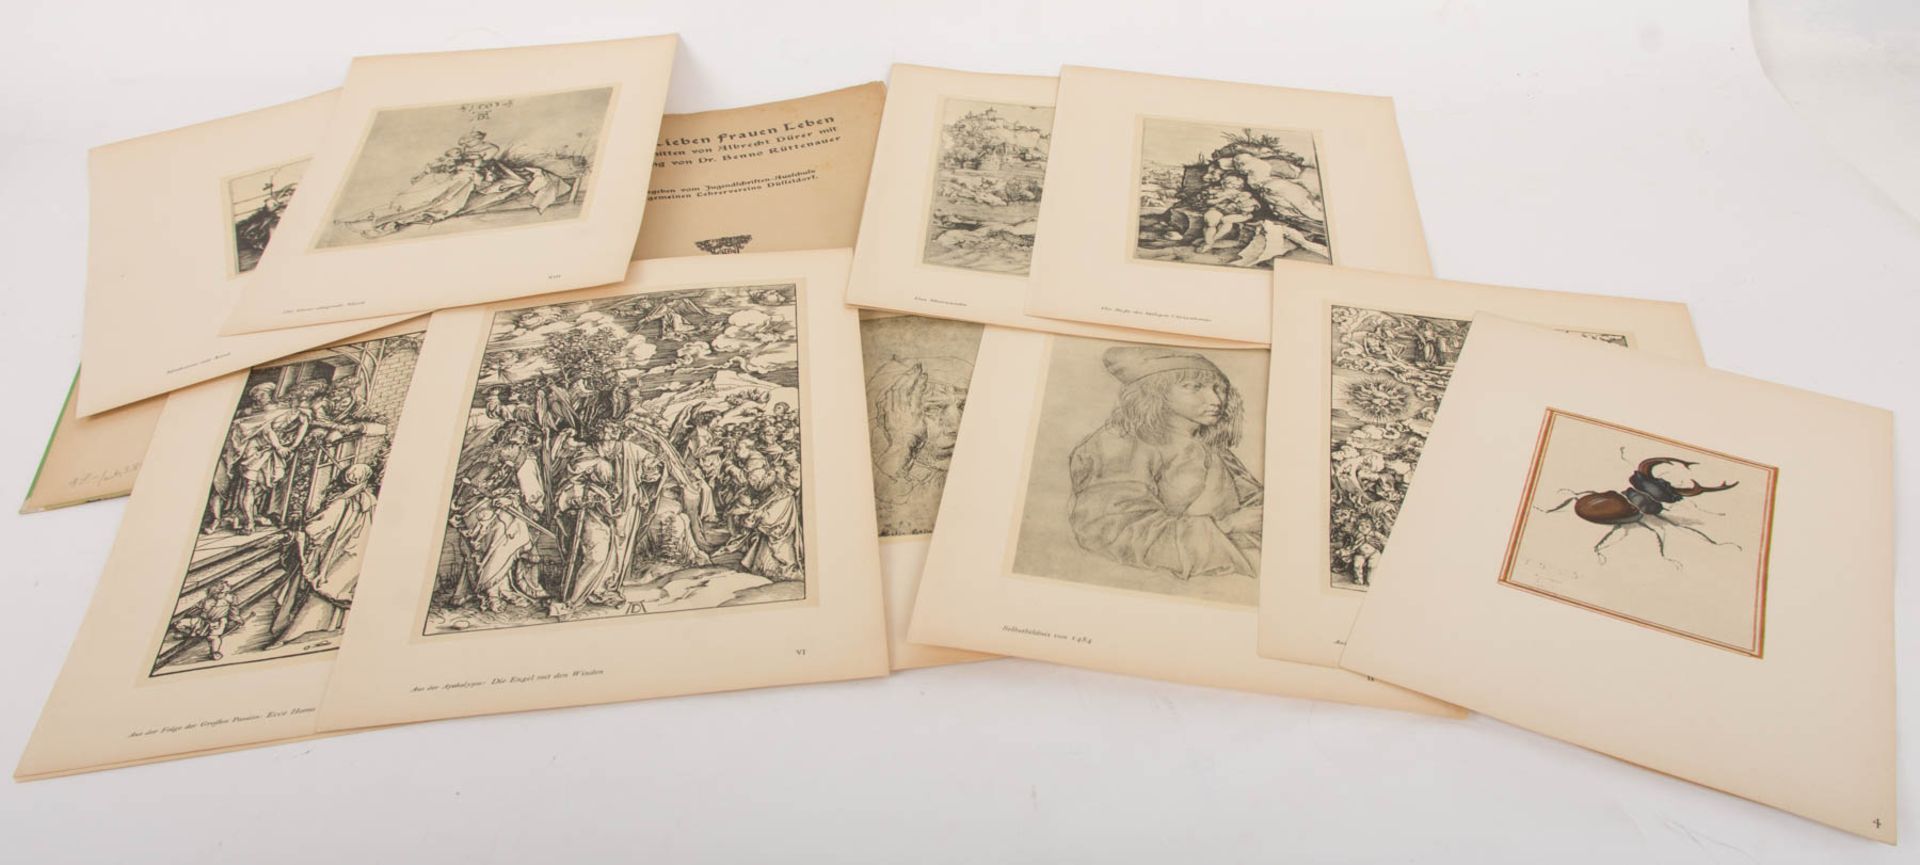 Konvolut von dreizehn Faksimile-Druckplatten zu "Die große Passion" von Albrecht Dürer, wohl Zinkätz - Image 29 of 33